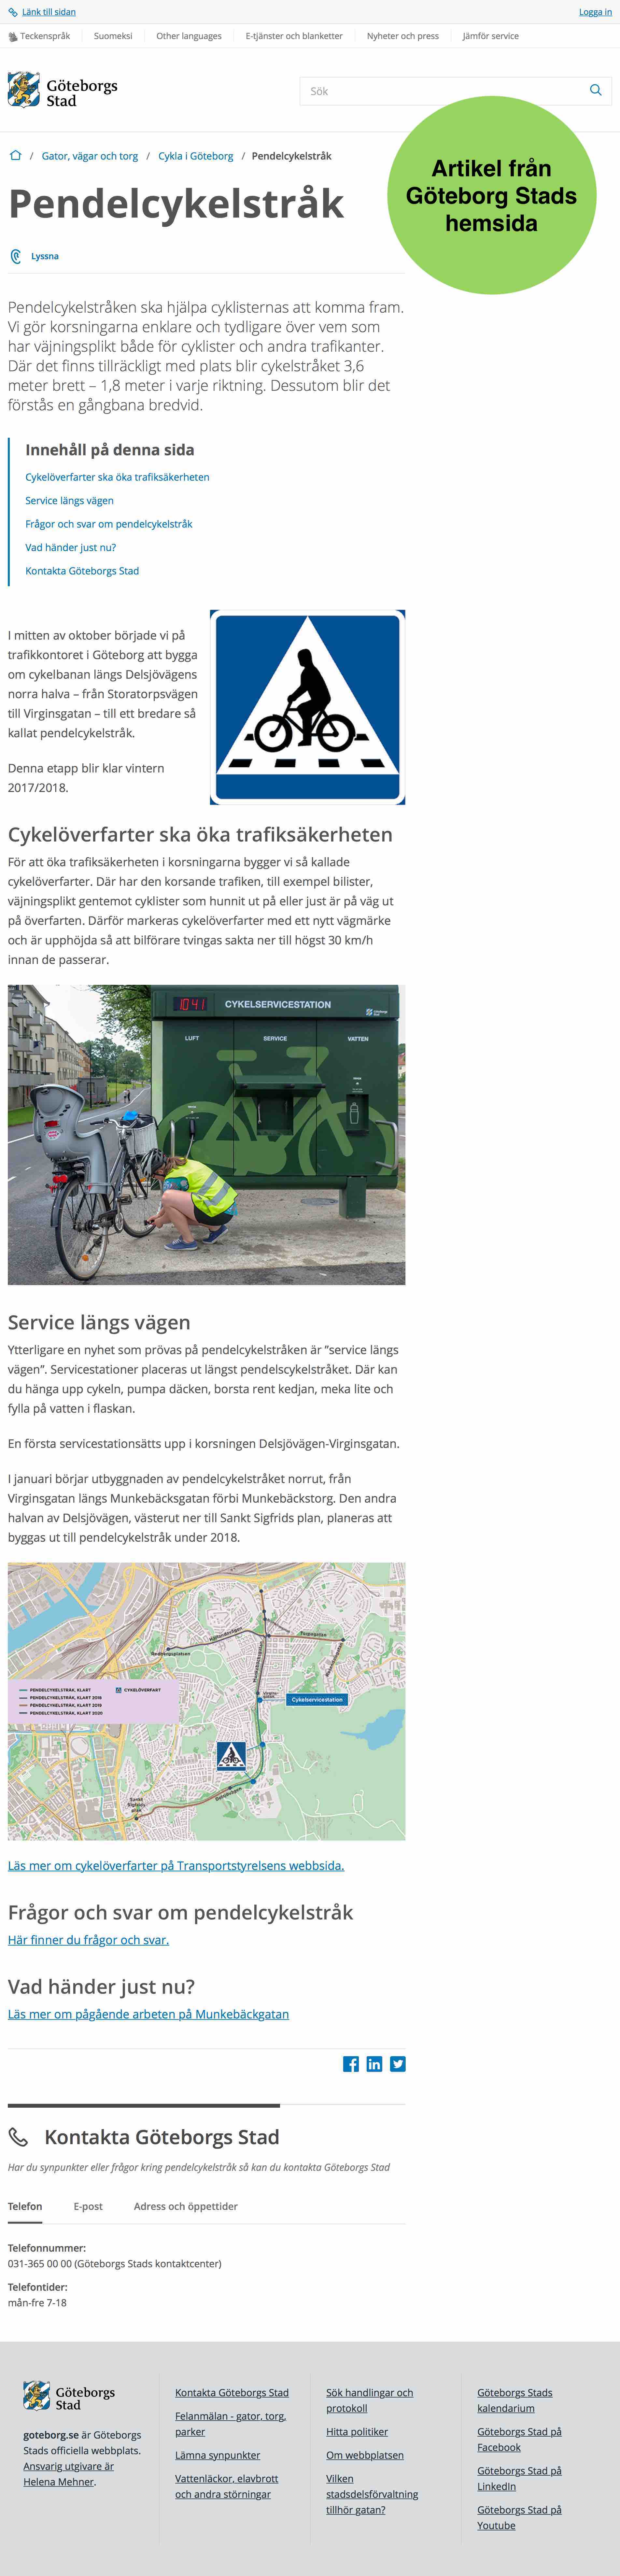 Artikel om Göteborgs nya servicestation för cyklar som de kallar "Service längs vägen"